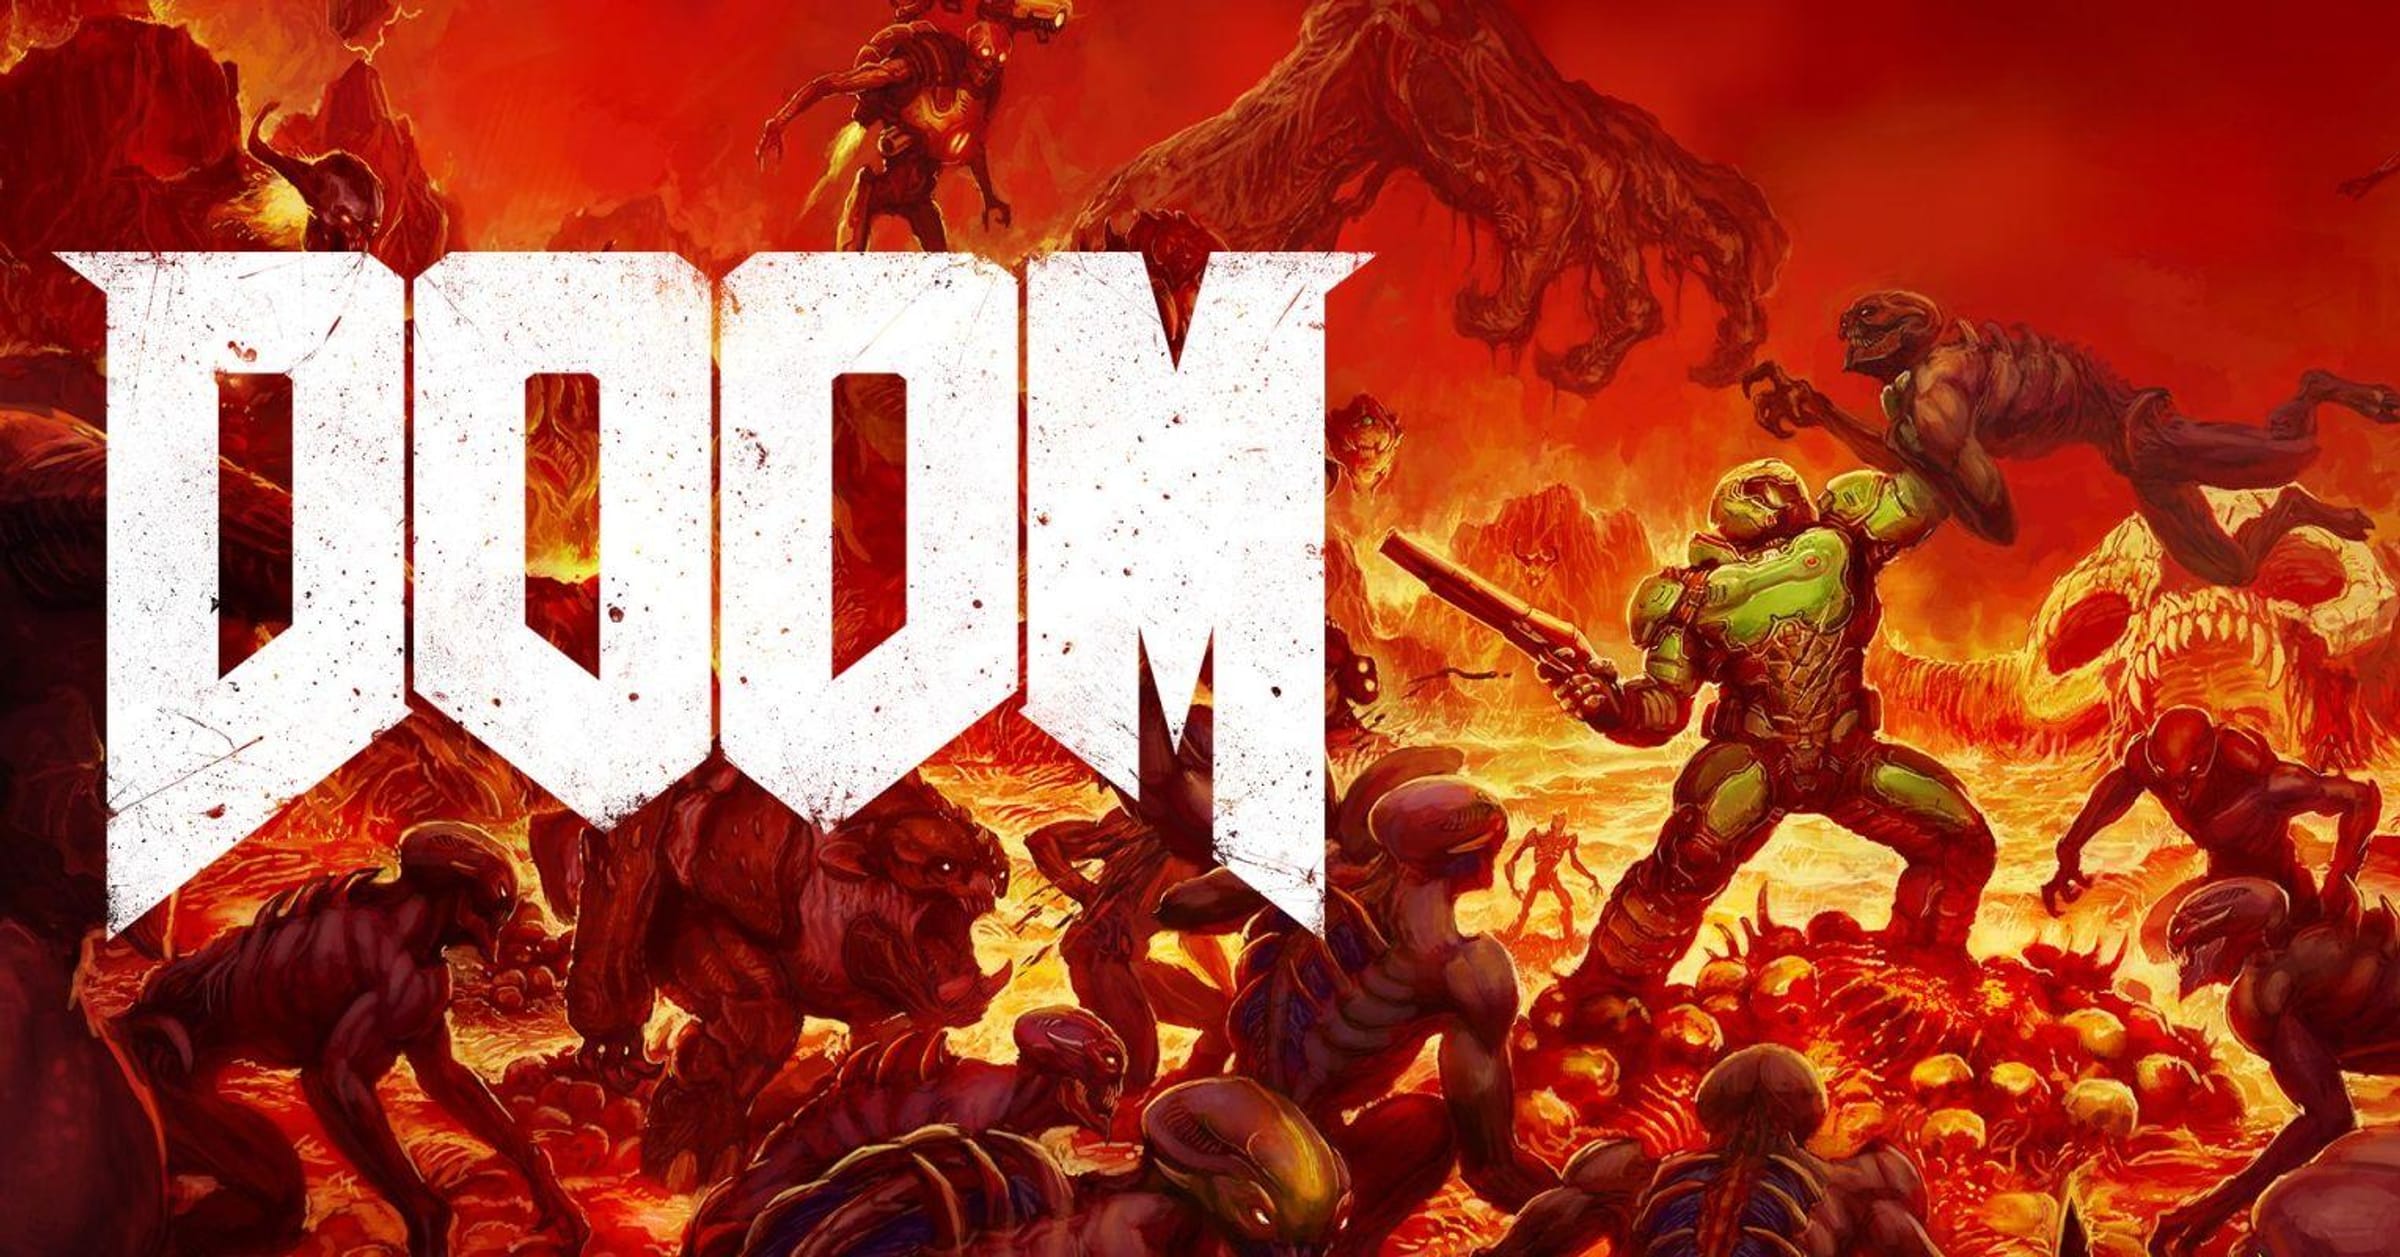 doom 4 release date ps3